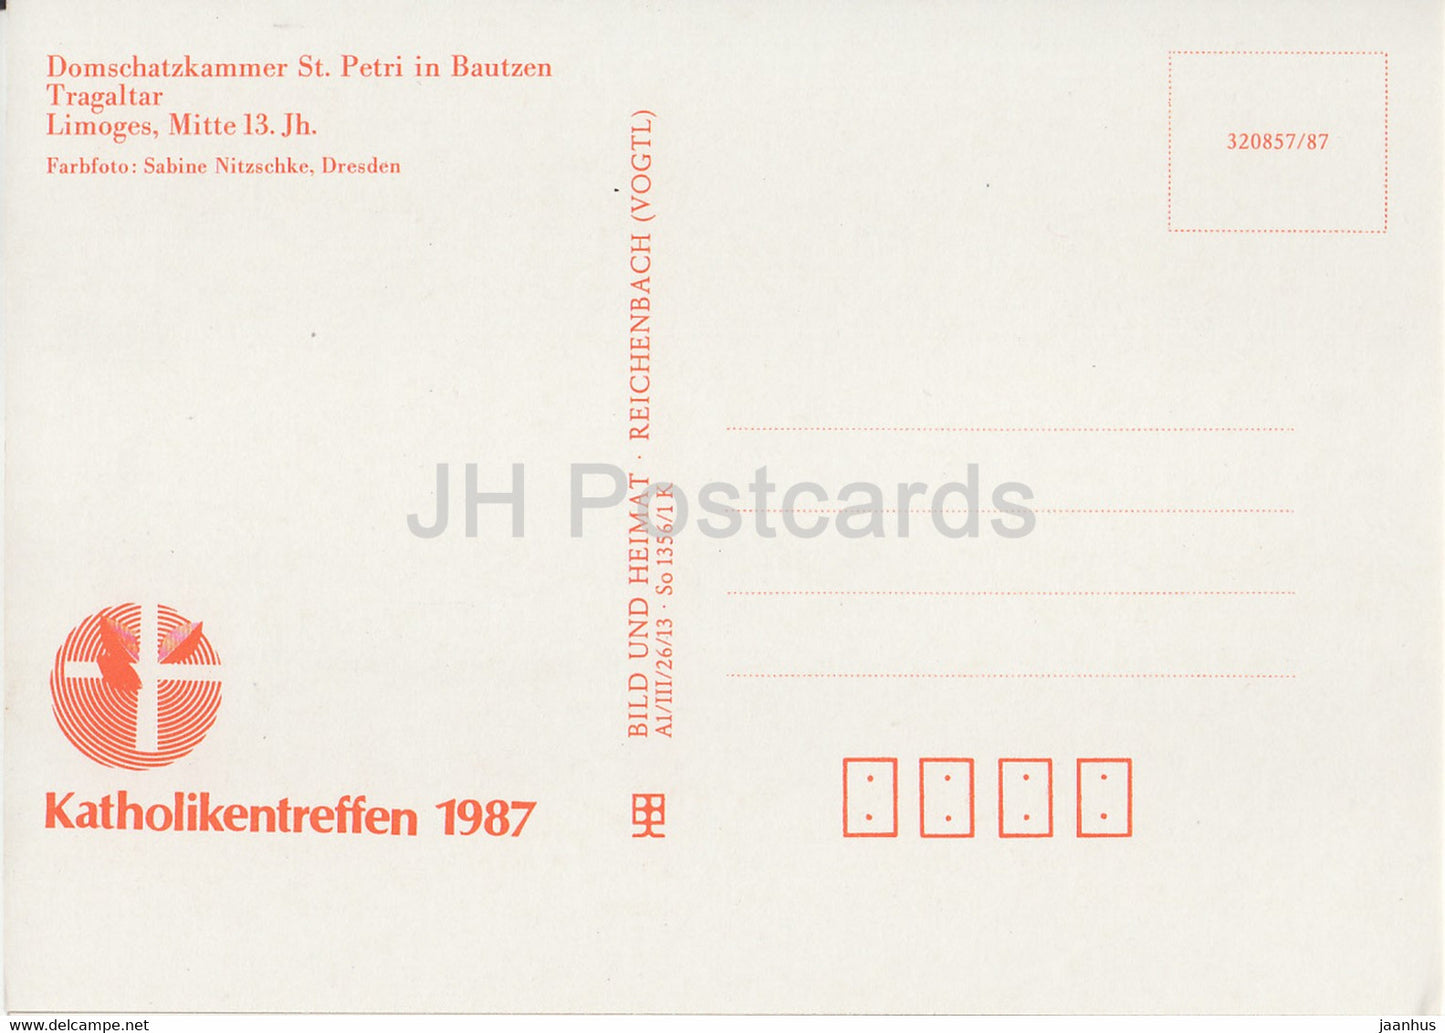 Tragaltar - Domschatzkammer St Petri à Bautzen - 1987 - DDR Allemagne - inutilisé